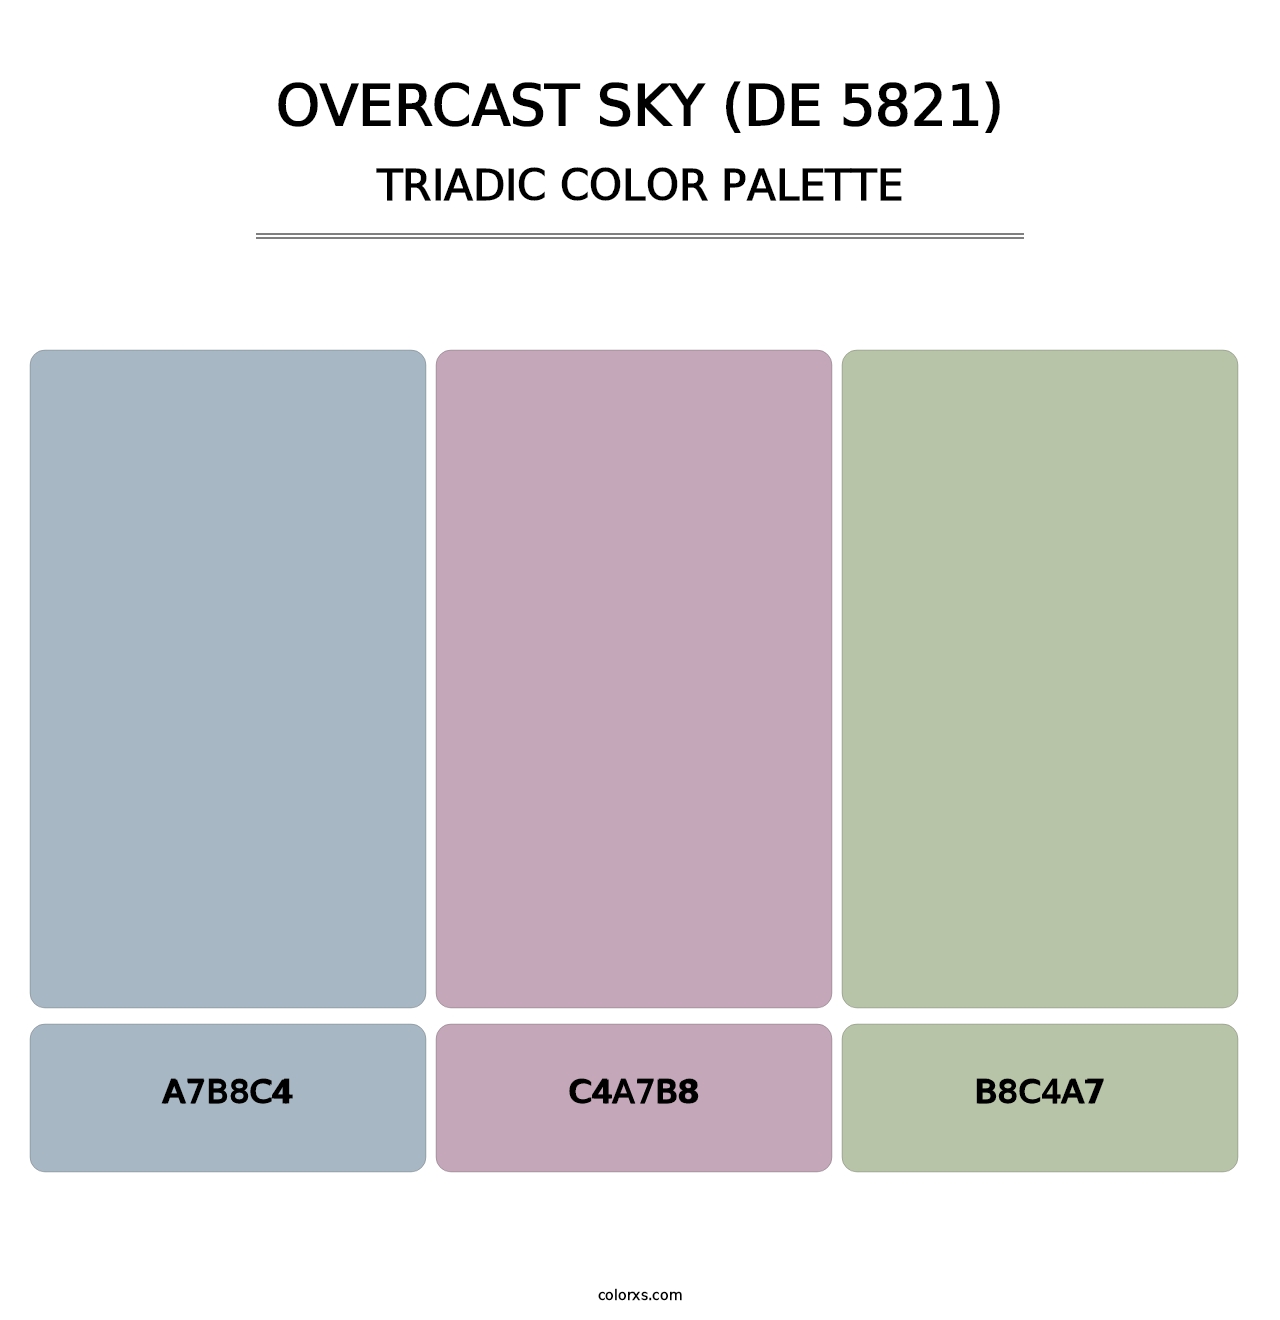 Overcast Sky (DE 5821) - Triadic Color Palette